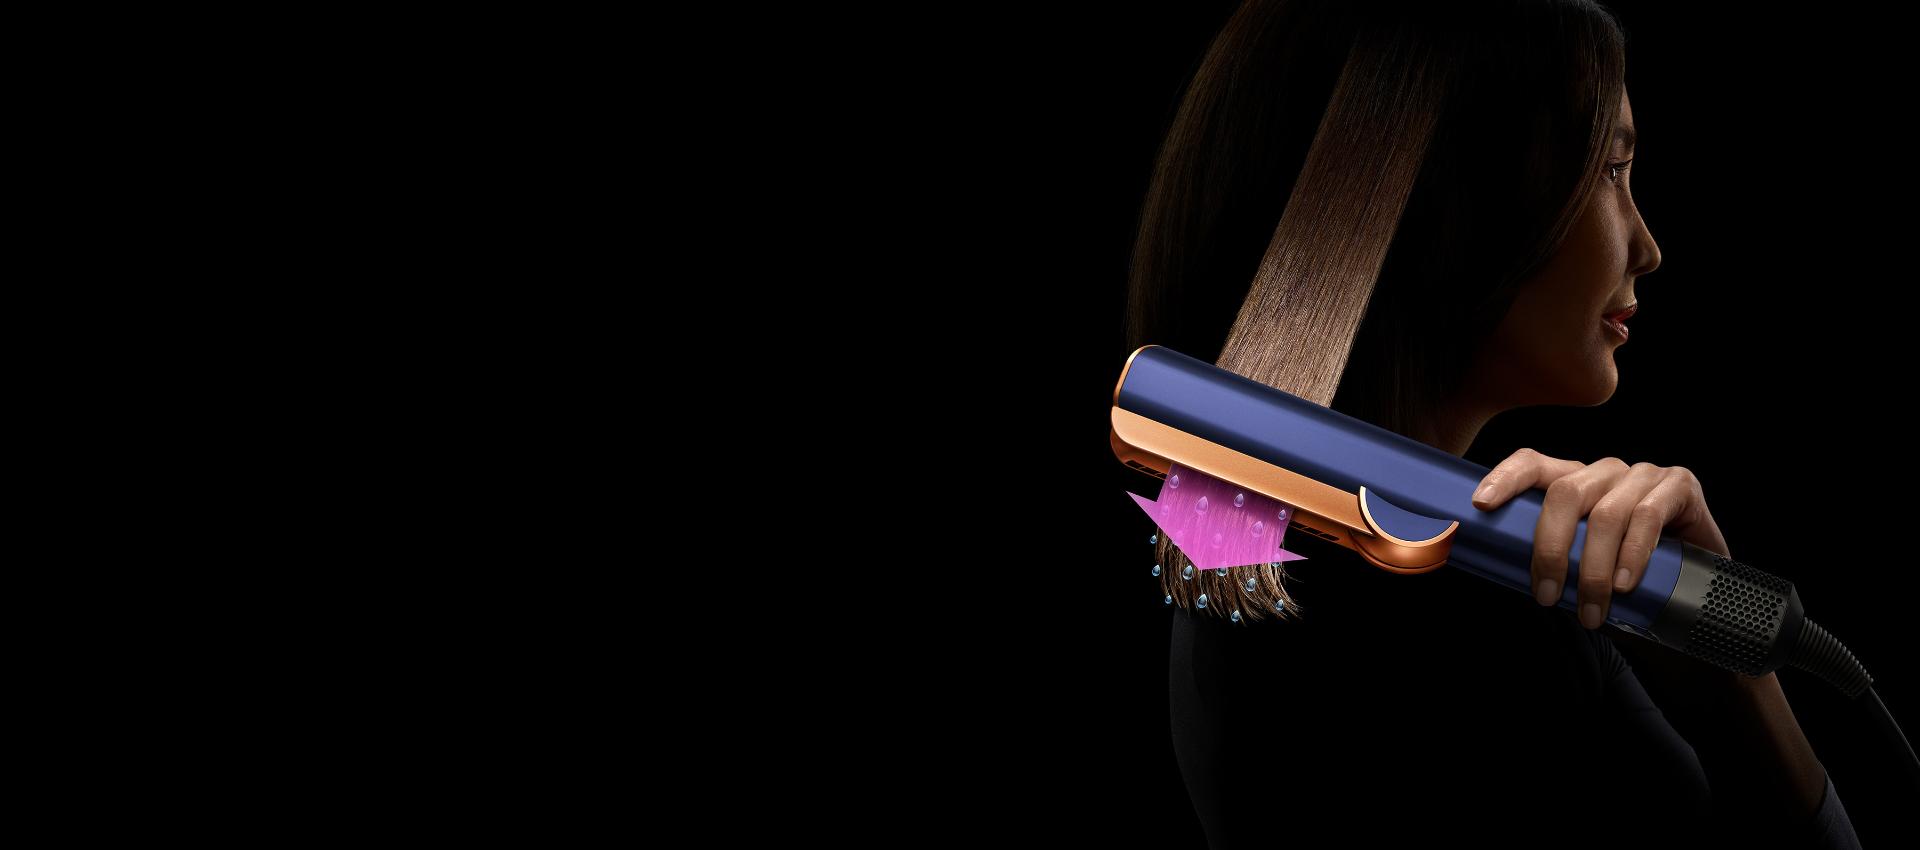 한 갈래 모발에 다이슨 에어스트레이트 스트레이트너를 사용하고 있는 여성. 분홍색 화살표와 물방울 모형을 통해 모발을 스트레이트하는 동시에 건조하고 있는 모습을 나타냅니다.